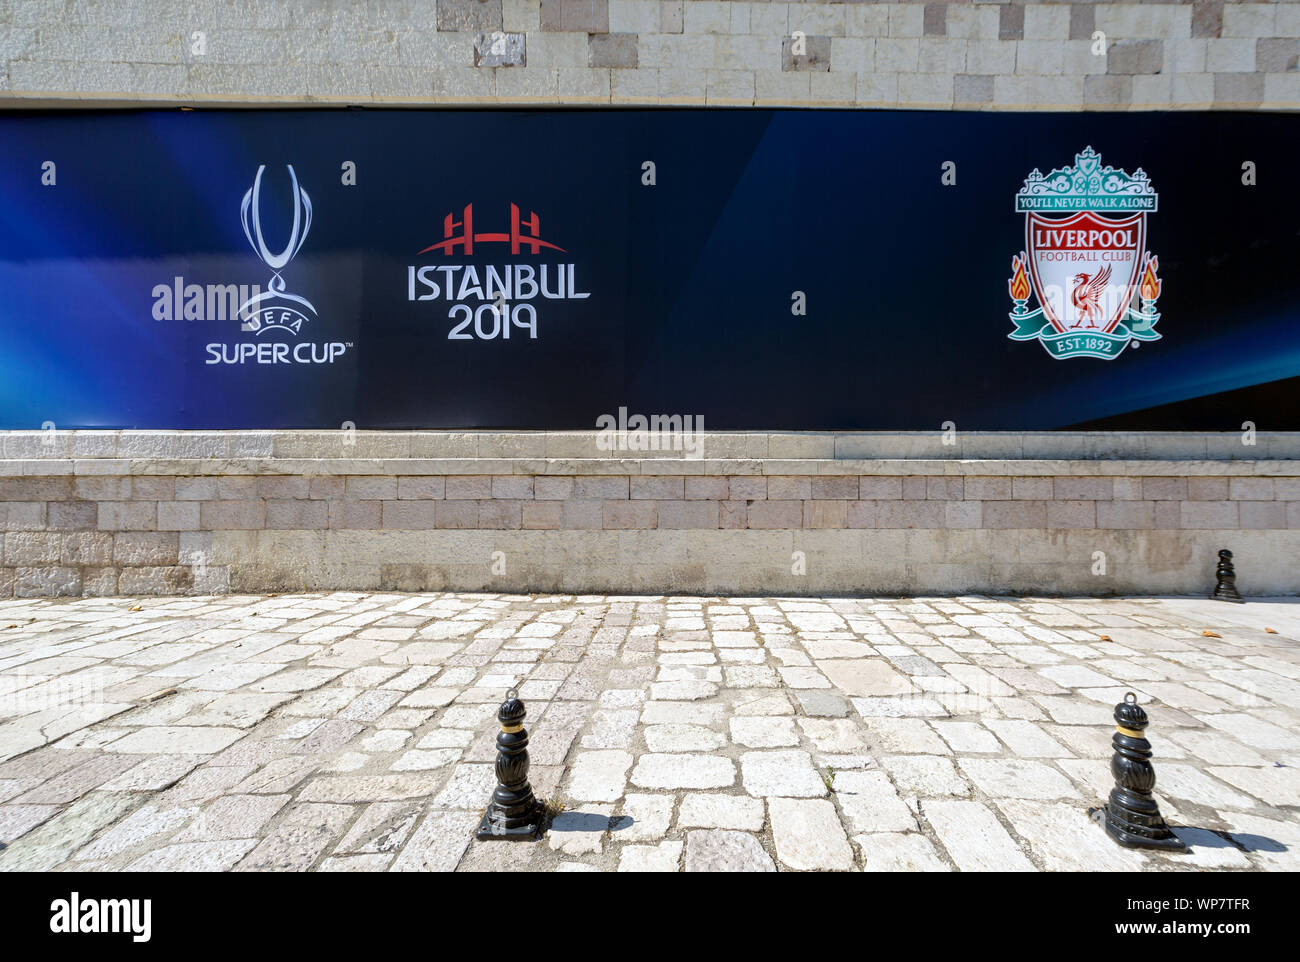 Liverpool Football Club und Super Cup Logos auf der Wand von björk Vodafone Park Stadion paar Tage vor der UEFA Super Cup 2019 Spiel. Stockfoto